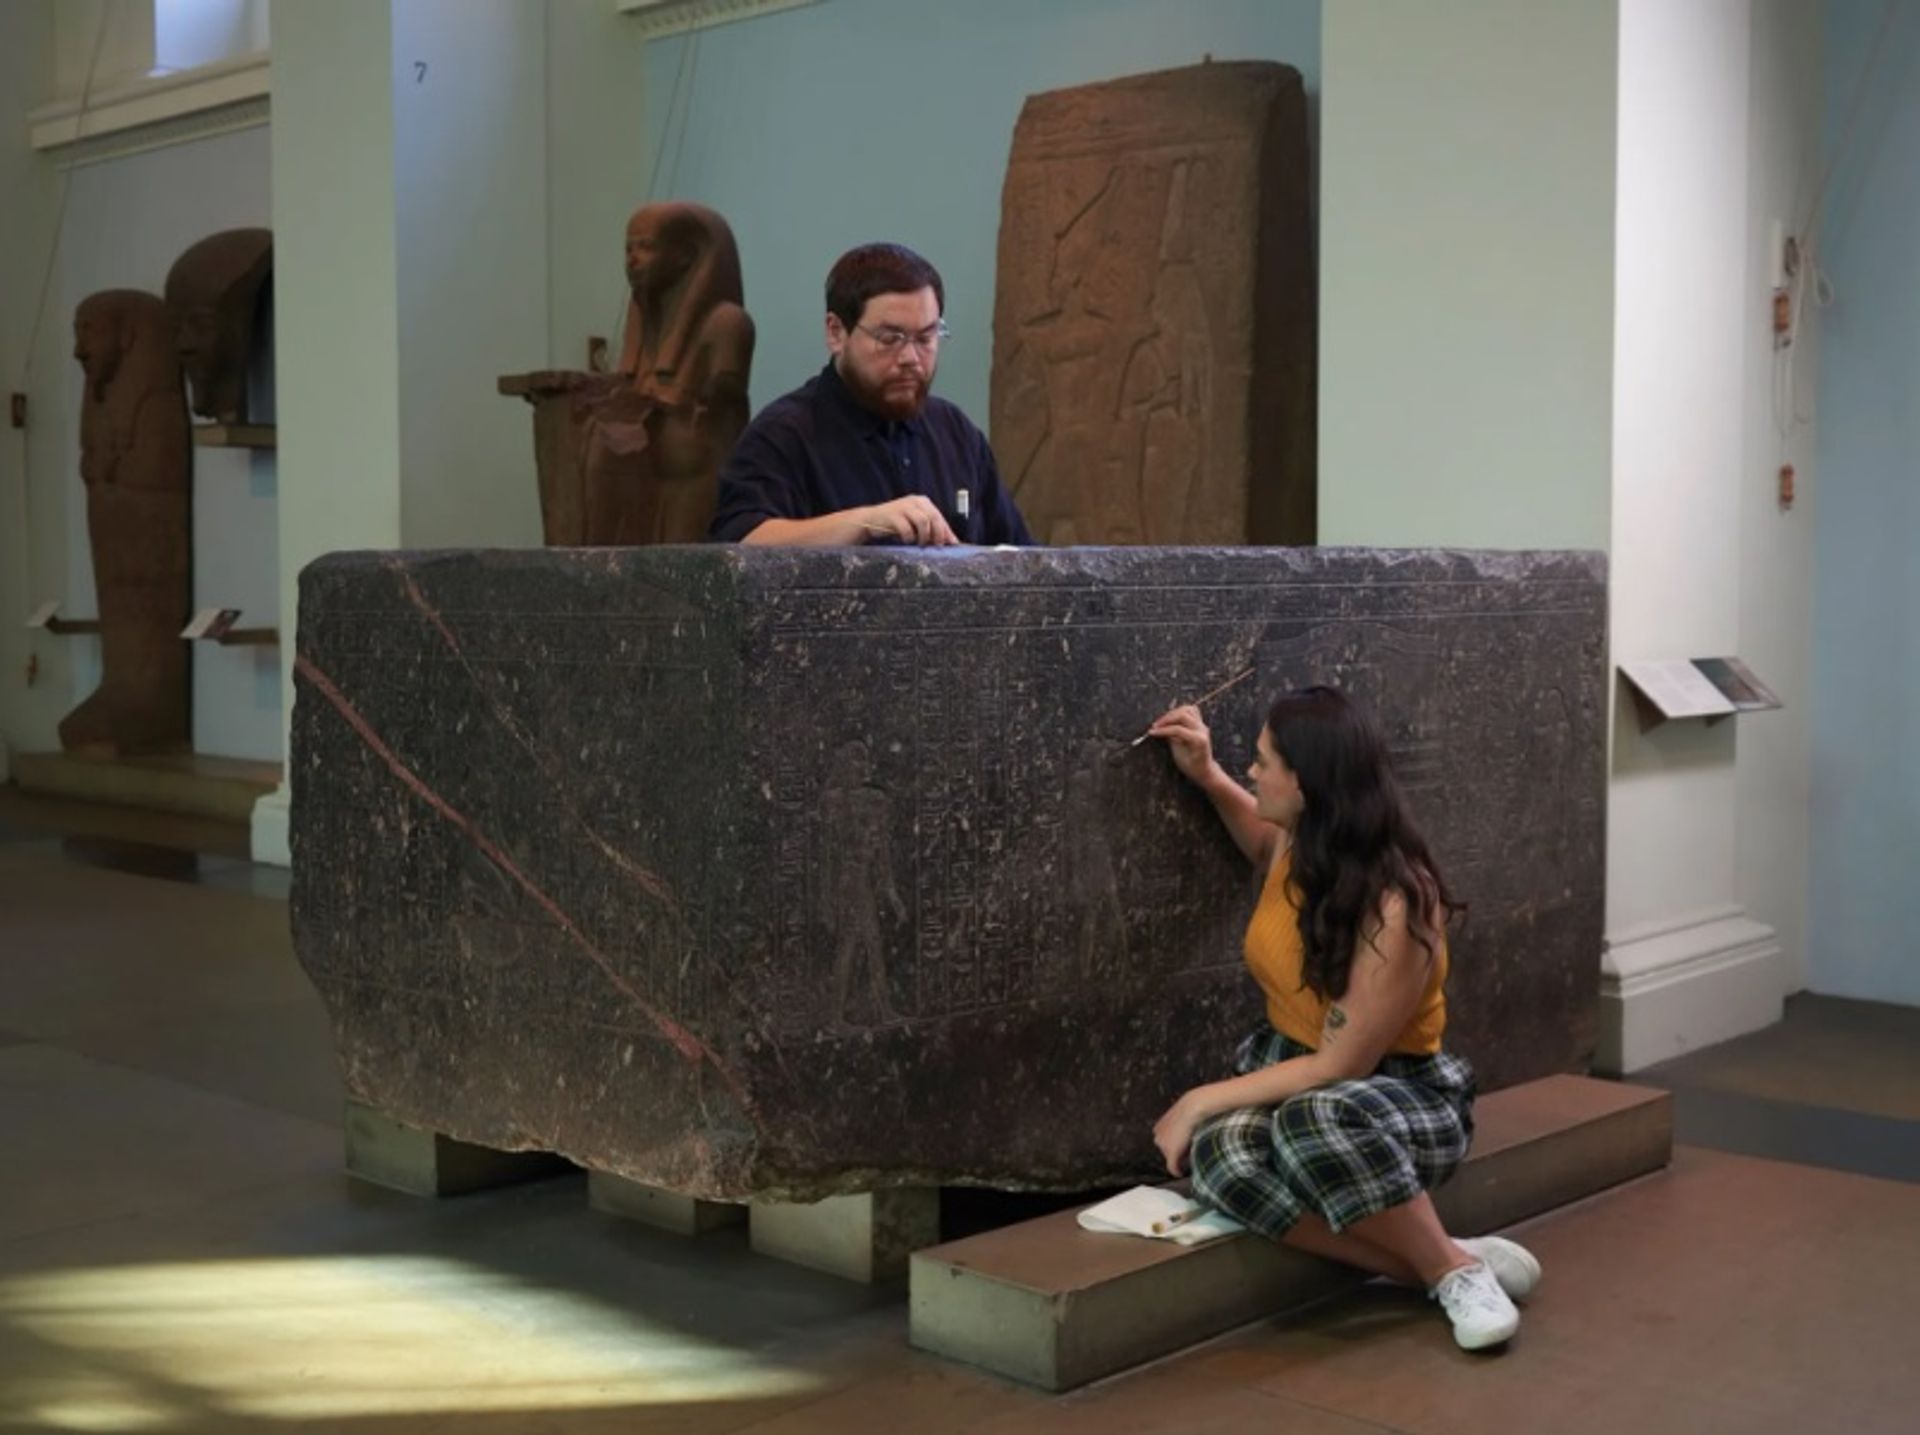 משמרת בכירה, סטפני וסיליו, וסטודנט לשימור, שון אובנה, מנקים את סרקופג האגן הקסום של הפמן (600 לפני הספירה) ב”מוזיאון הבריטי”, לקראת התערוכה

© הנאמנים של המוזיאון הבריטי